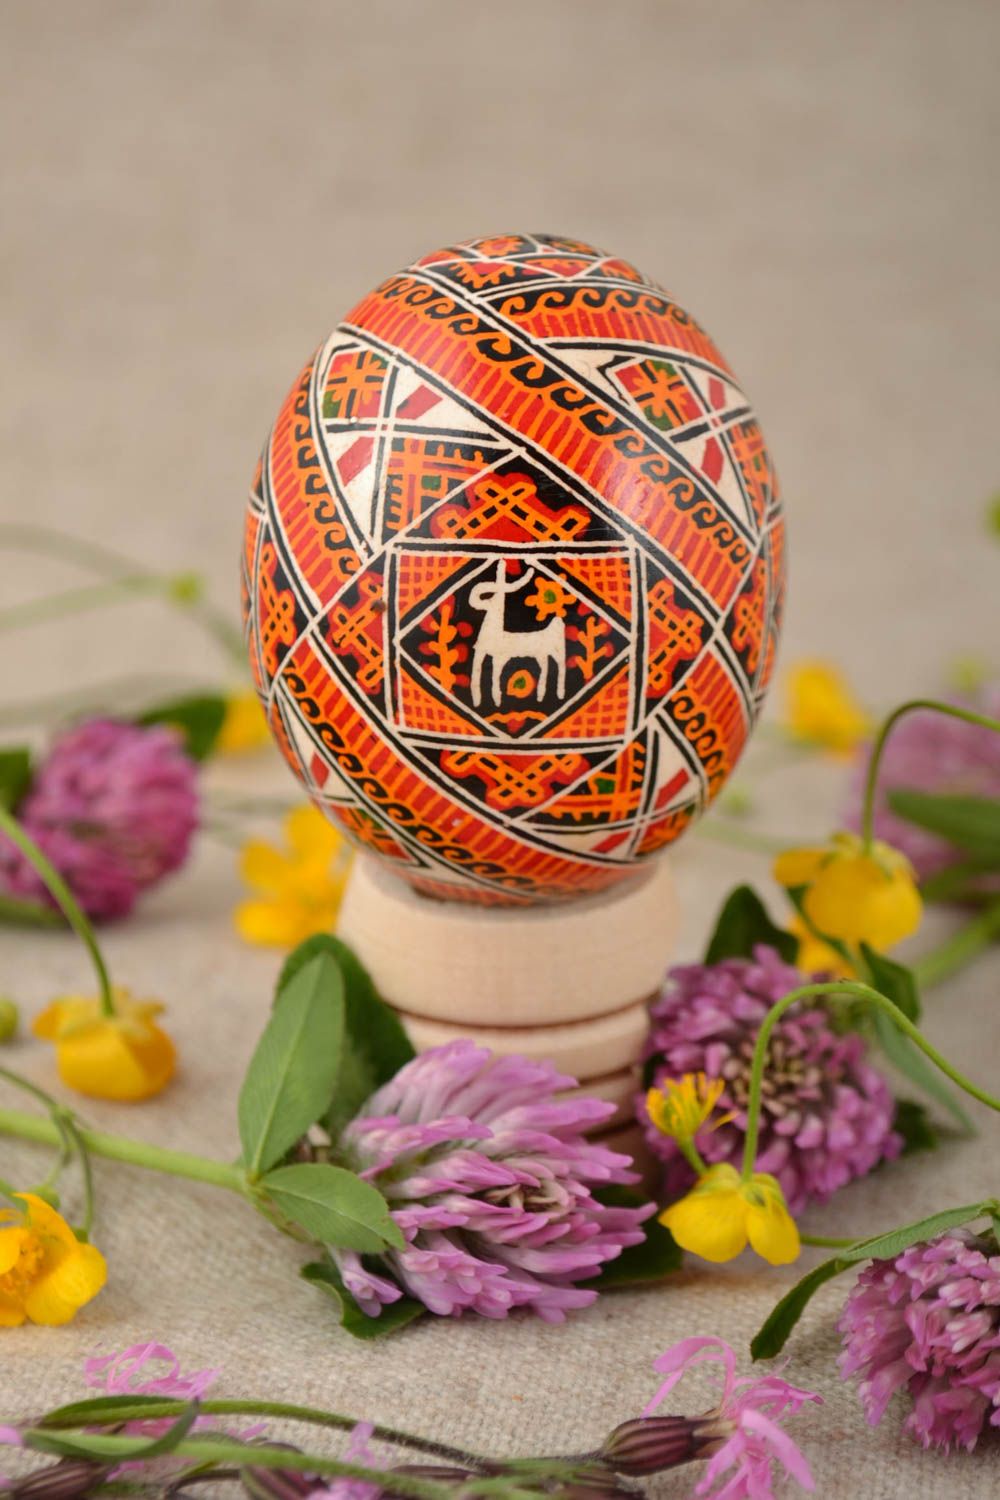 Расписное пасхальное яйцо со славянской символикой в оранжевых тонах хэнд мейд фото 1